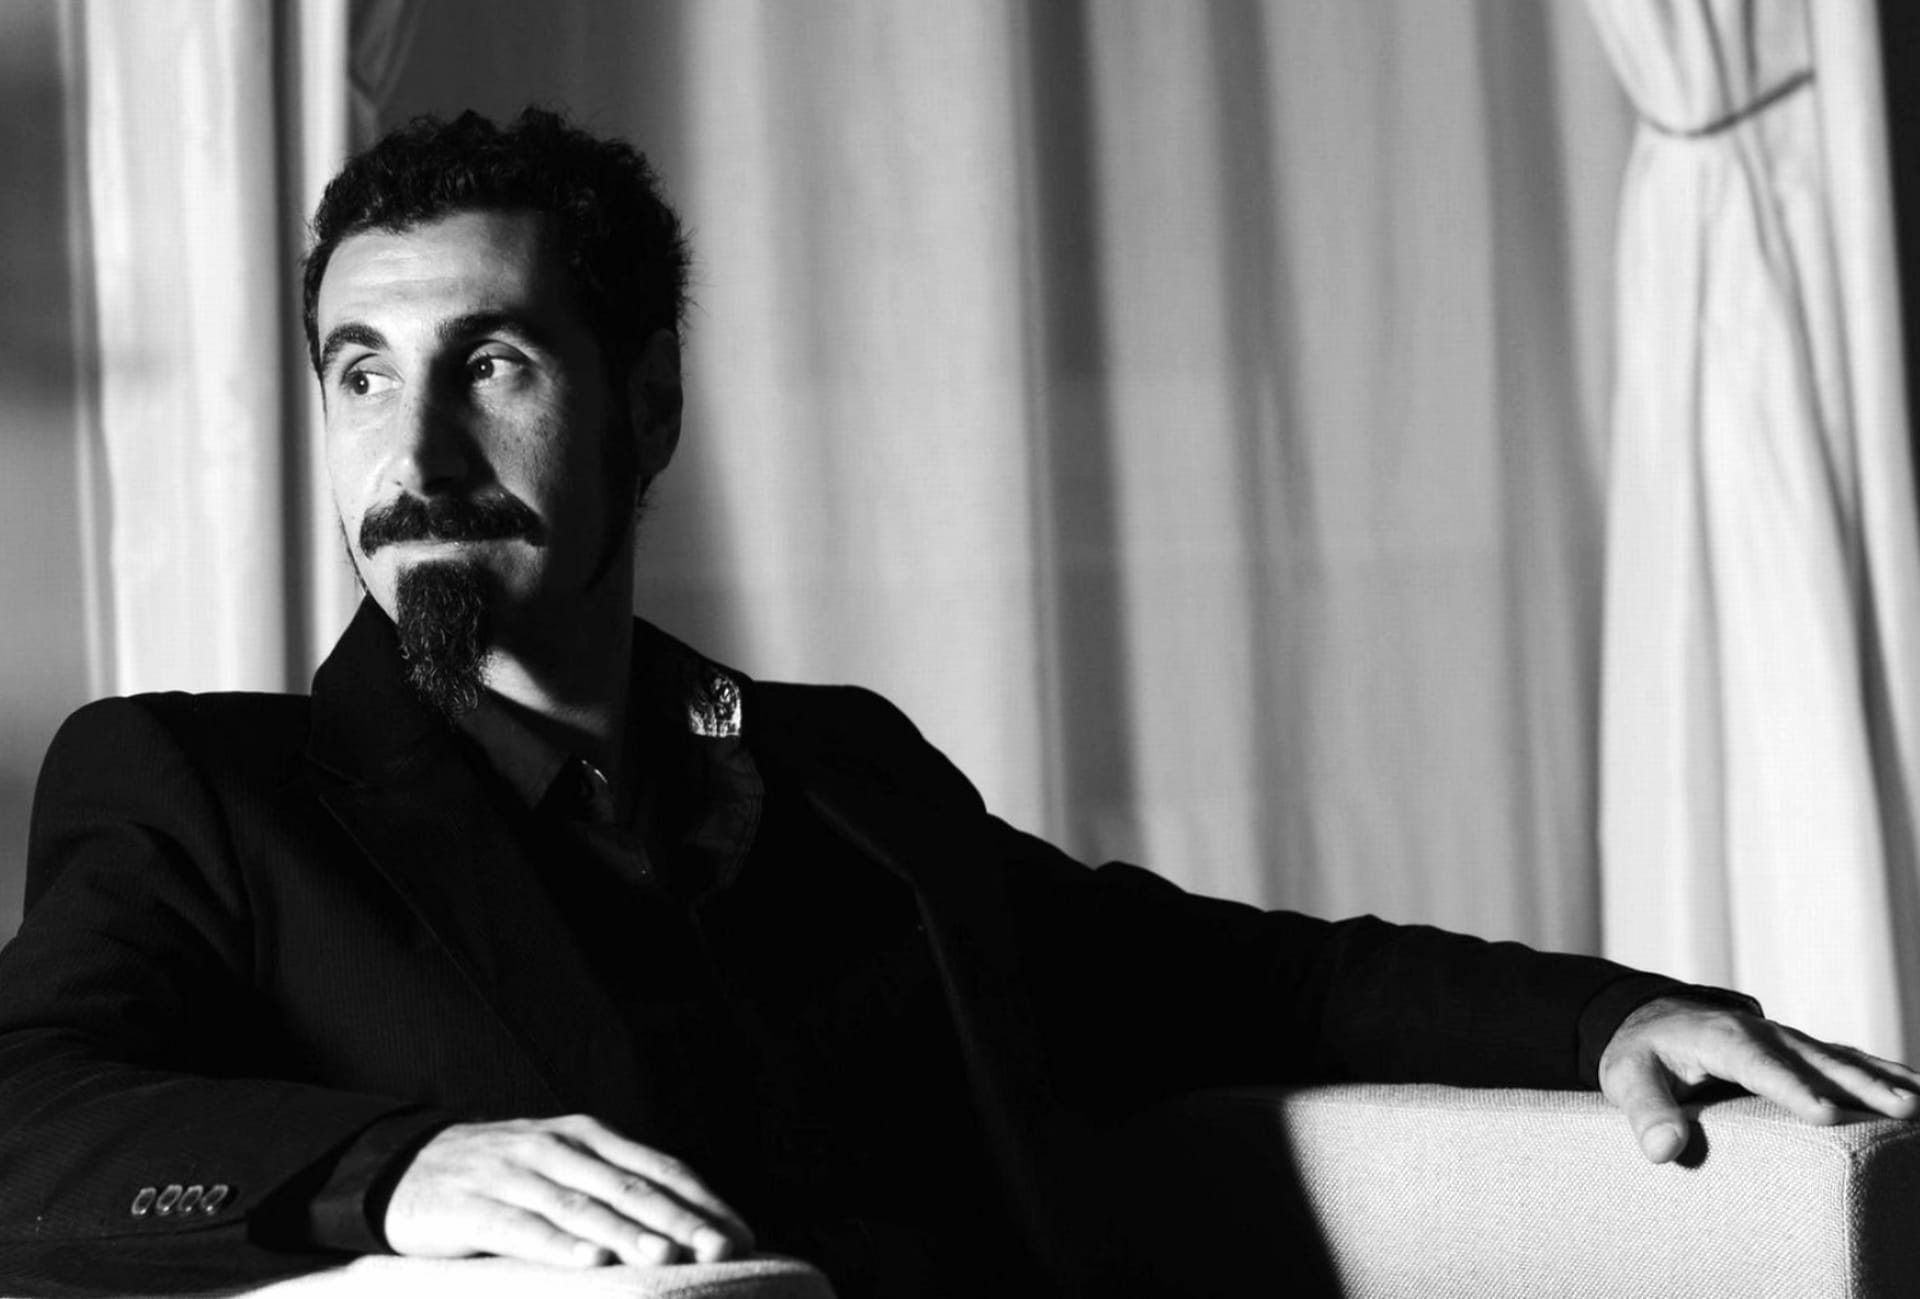 Serj Tankian at 640 x 1136 iPhone 5 size wallpapers HD quality